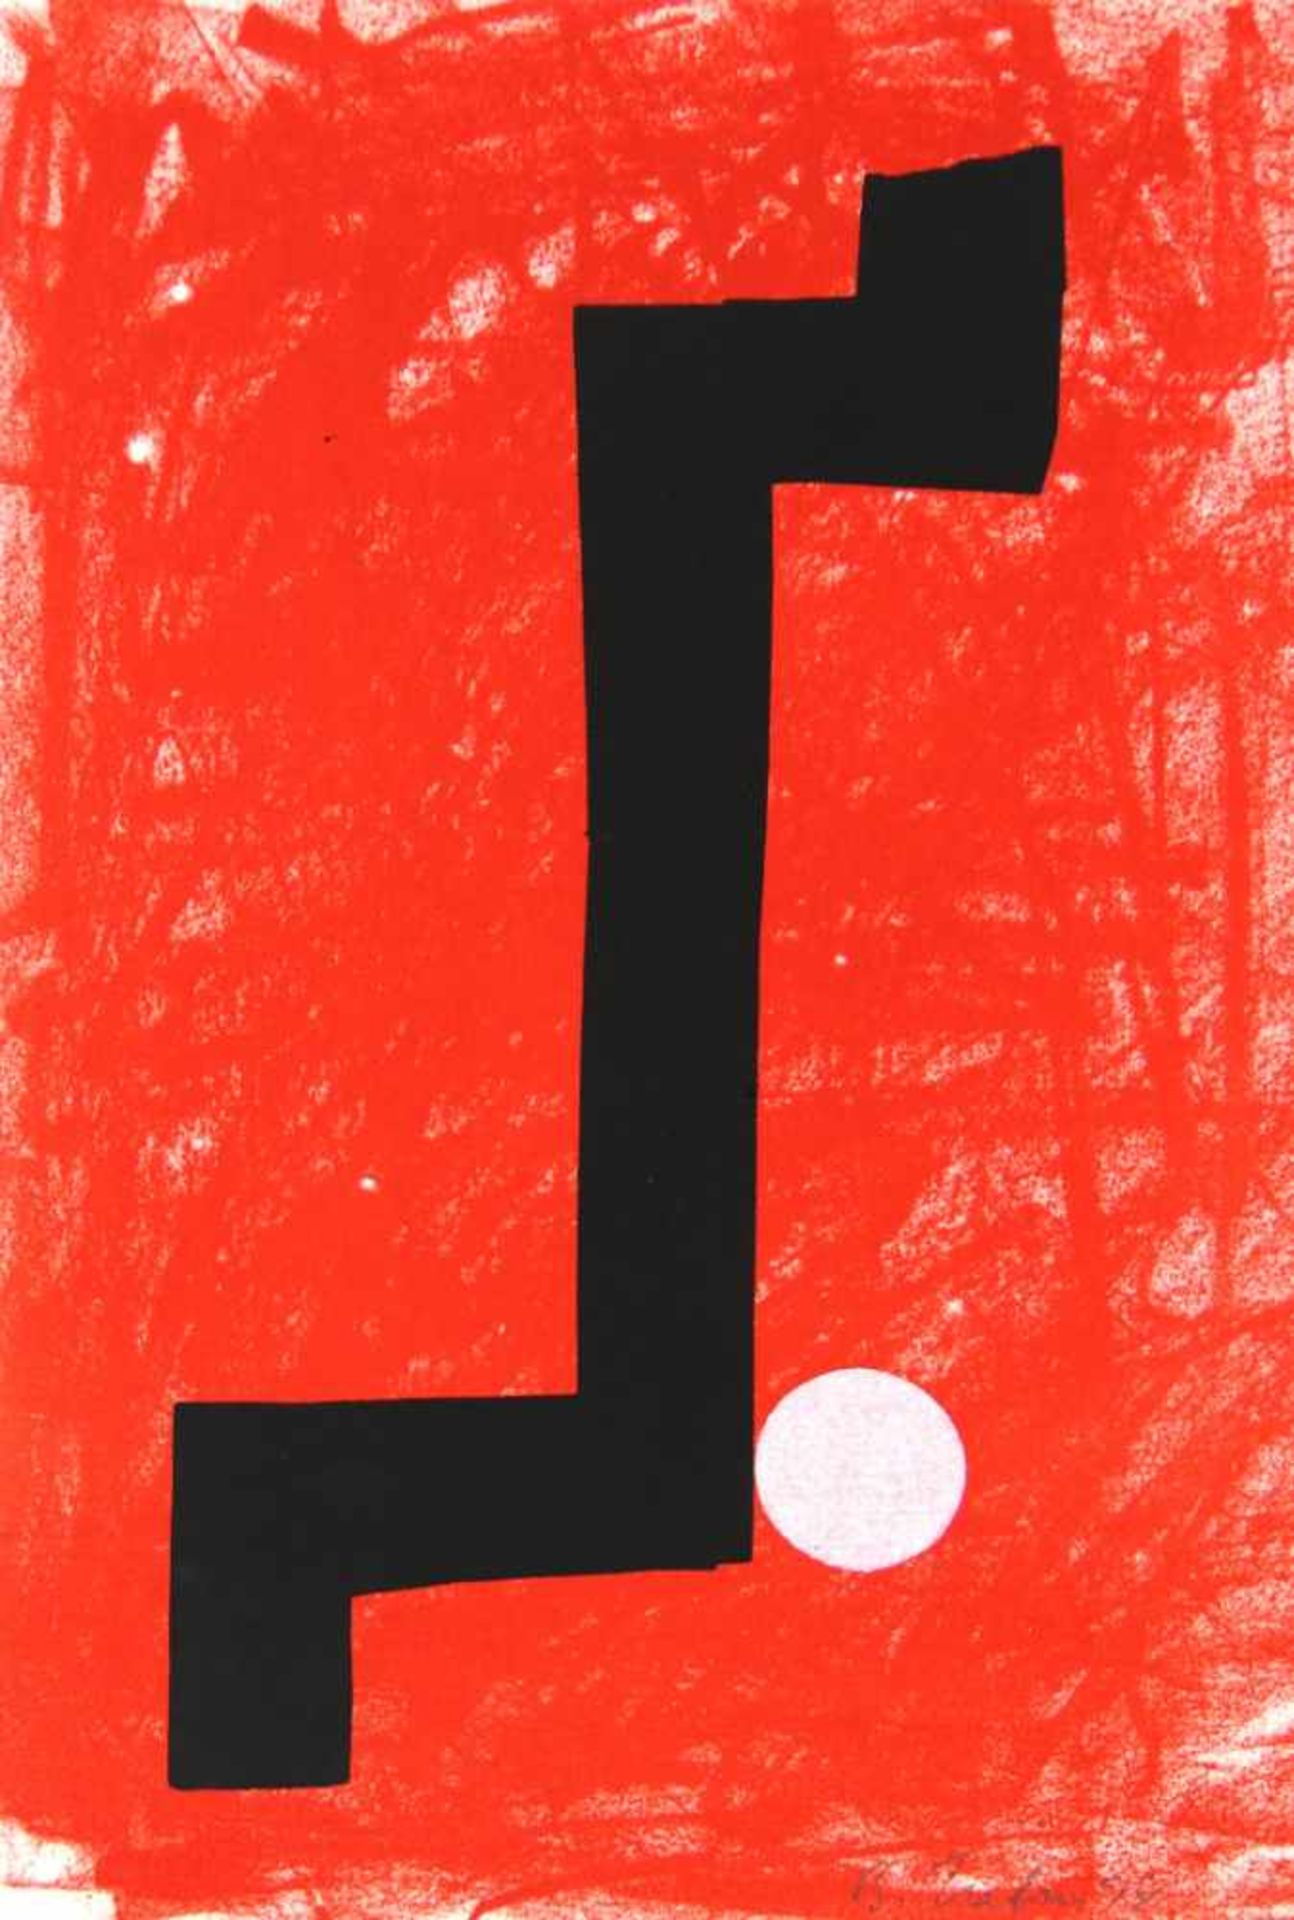 Hahn, Bernd. (1954-2011):Ohne Titel. Abstrakte Komposition in Rot und Schwarz. Mischtechnik. Tempera